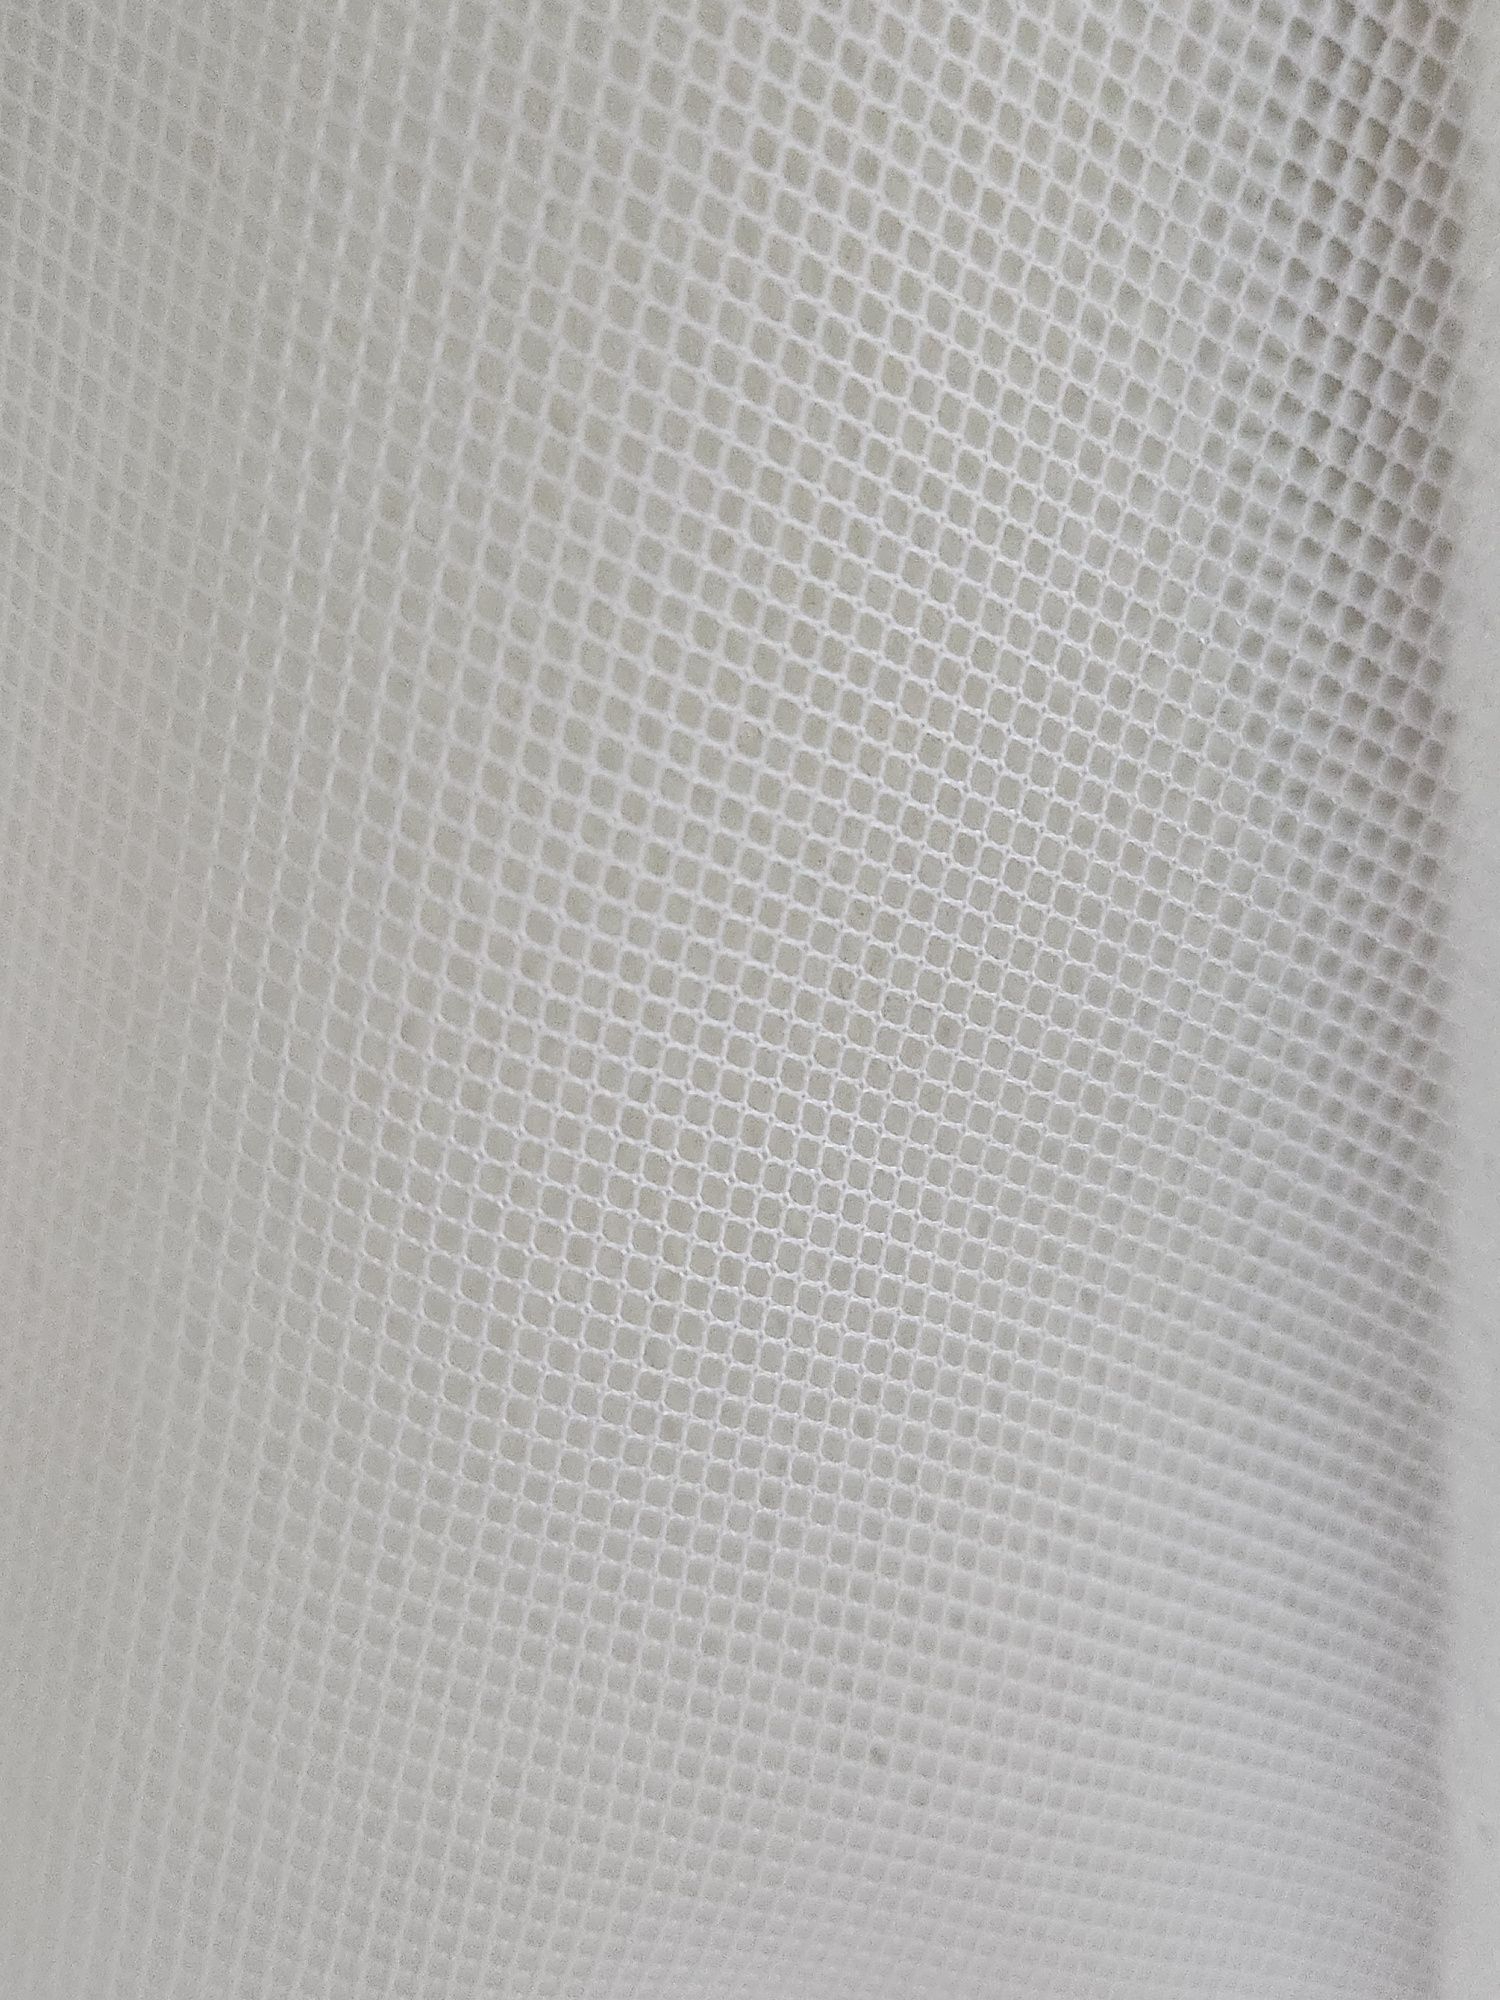 Новая тюль Белая, однотонная полупрозрачная.5м.